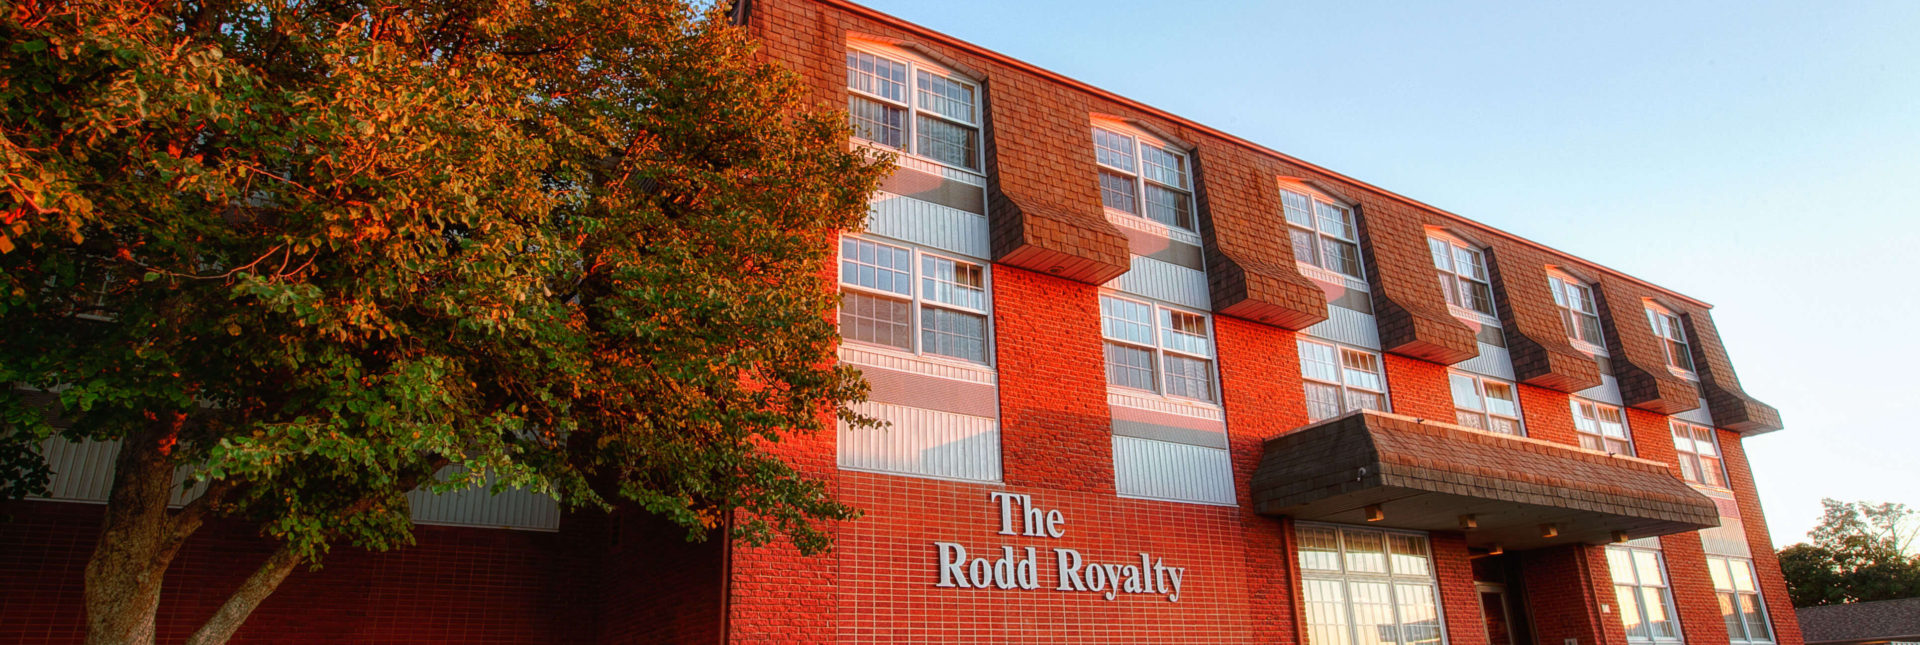 Rodd Royalty Hotel